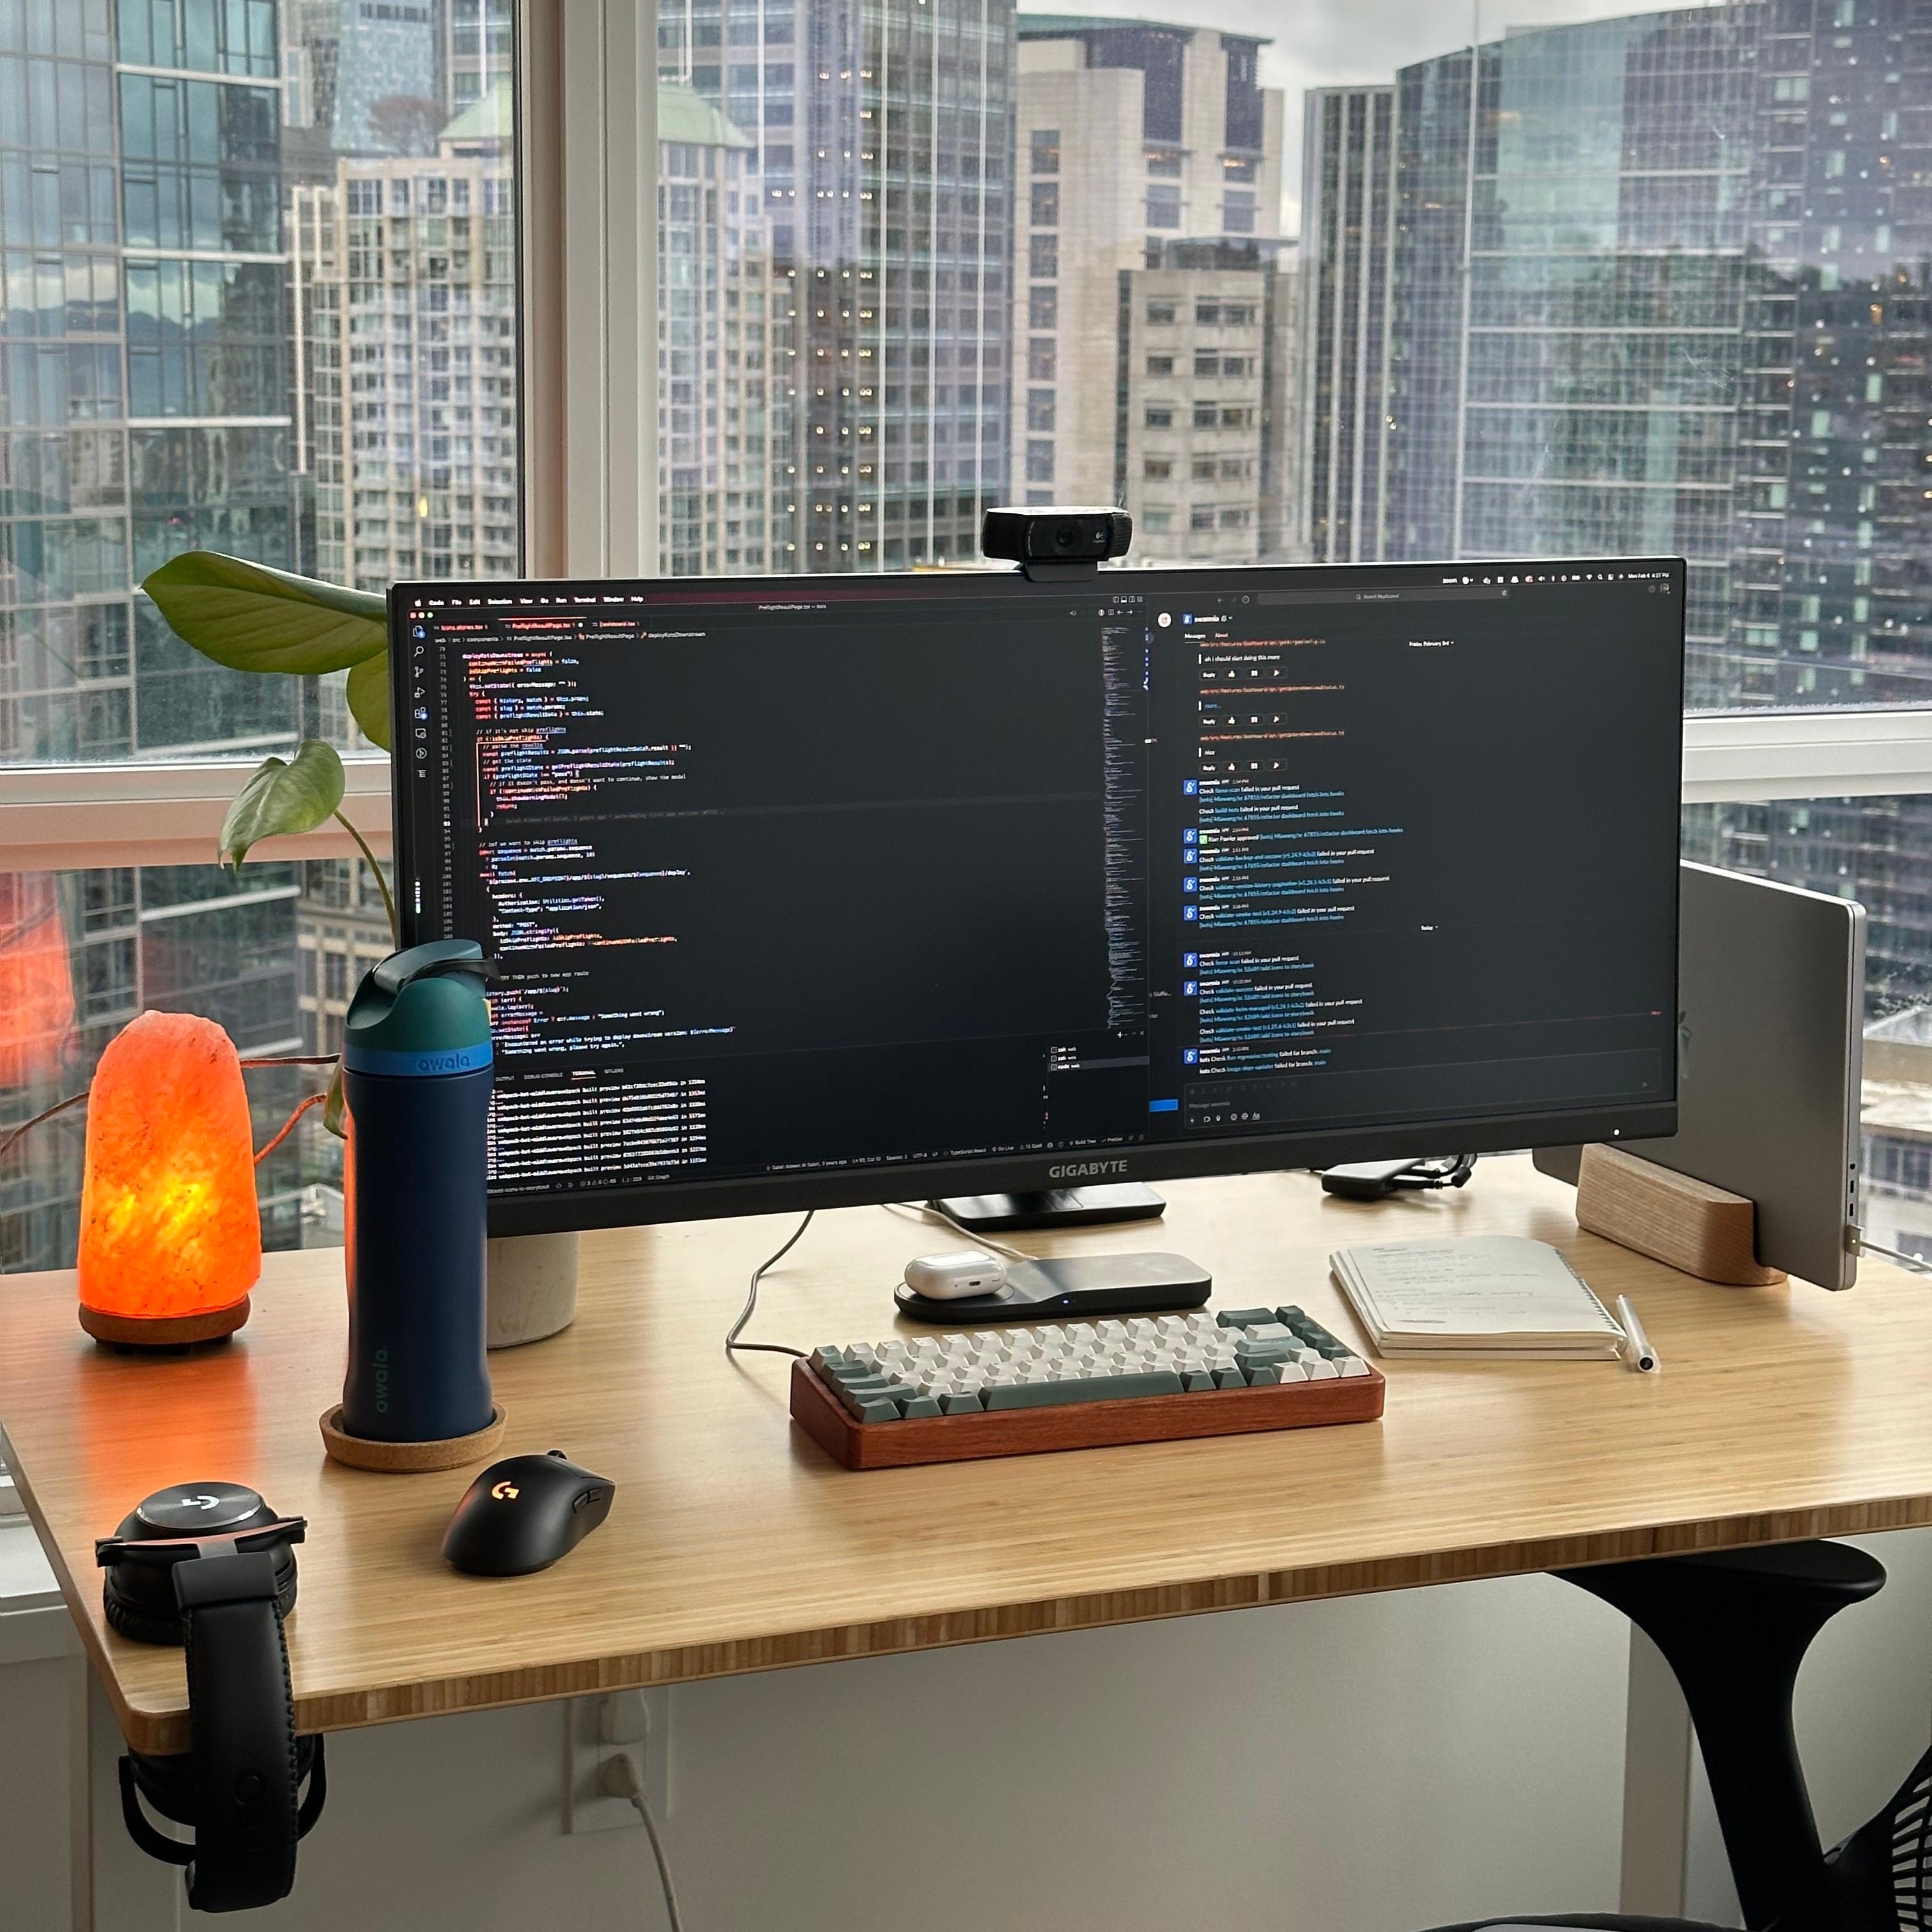 Mia's desk setup